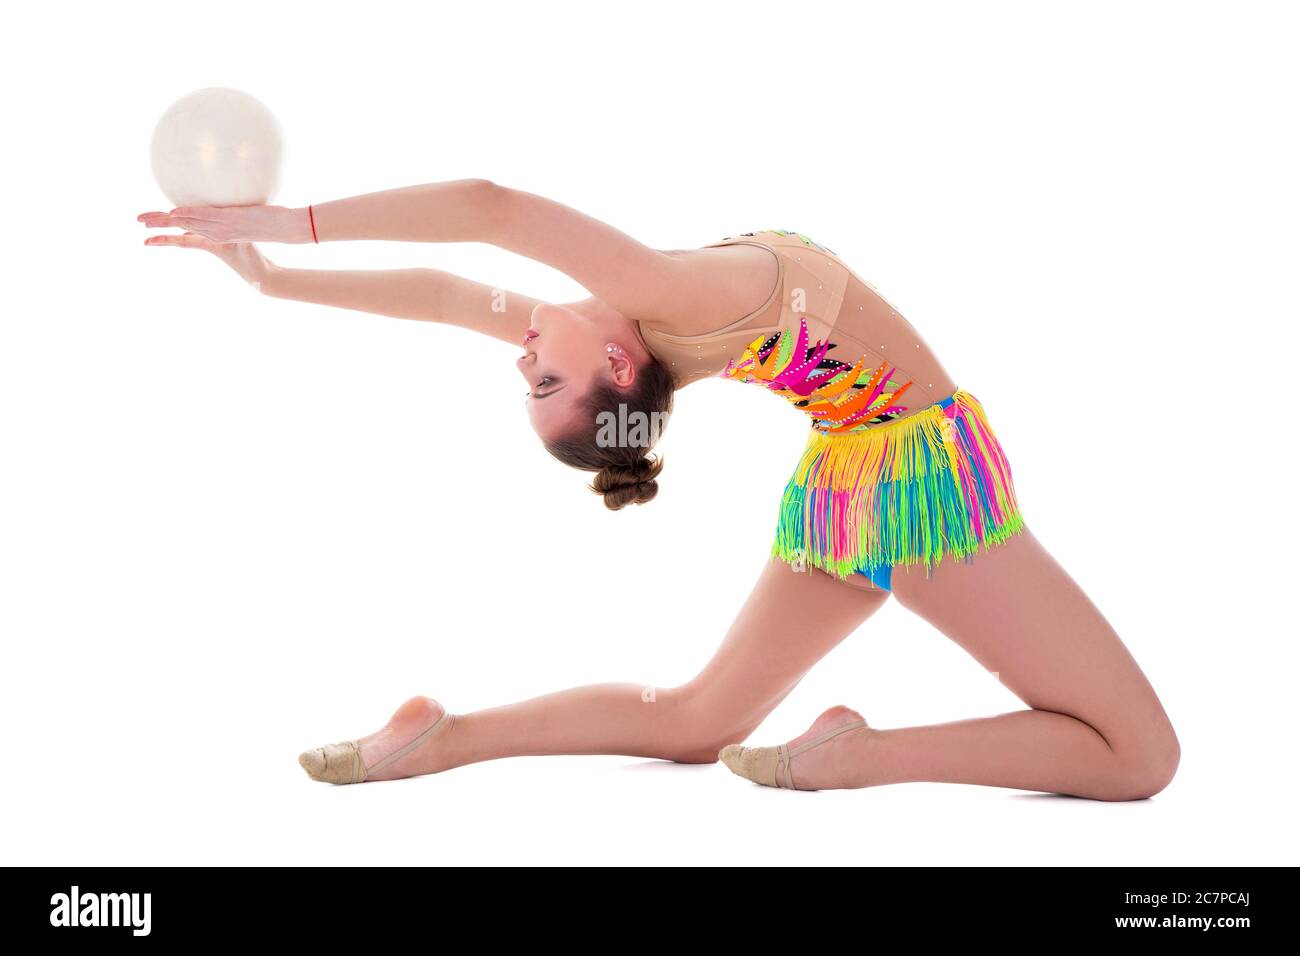 bella donna sportiva che fa ginnastica con palla isolata su sfondo bianco Foto Stock